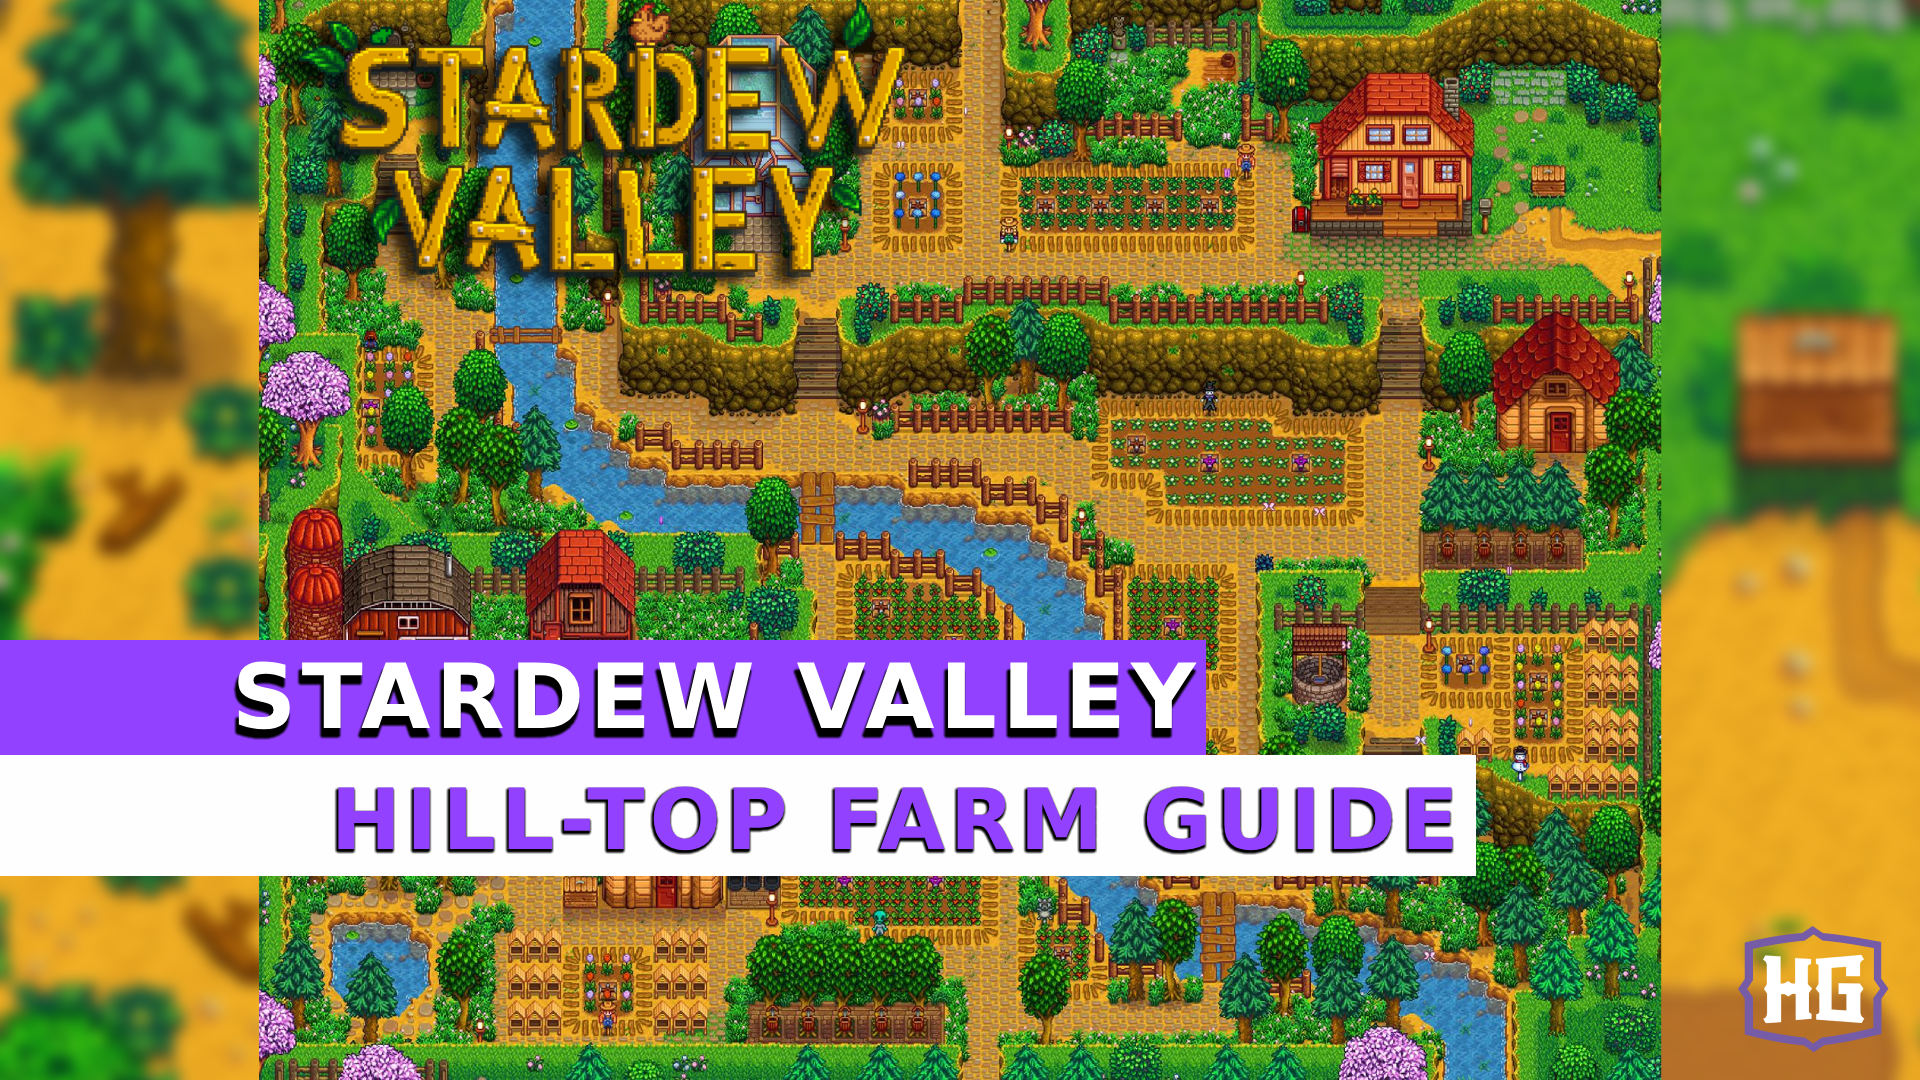 hill-top farm guide